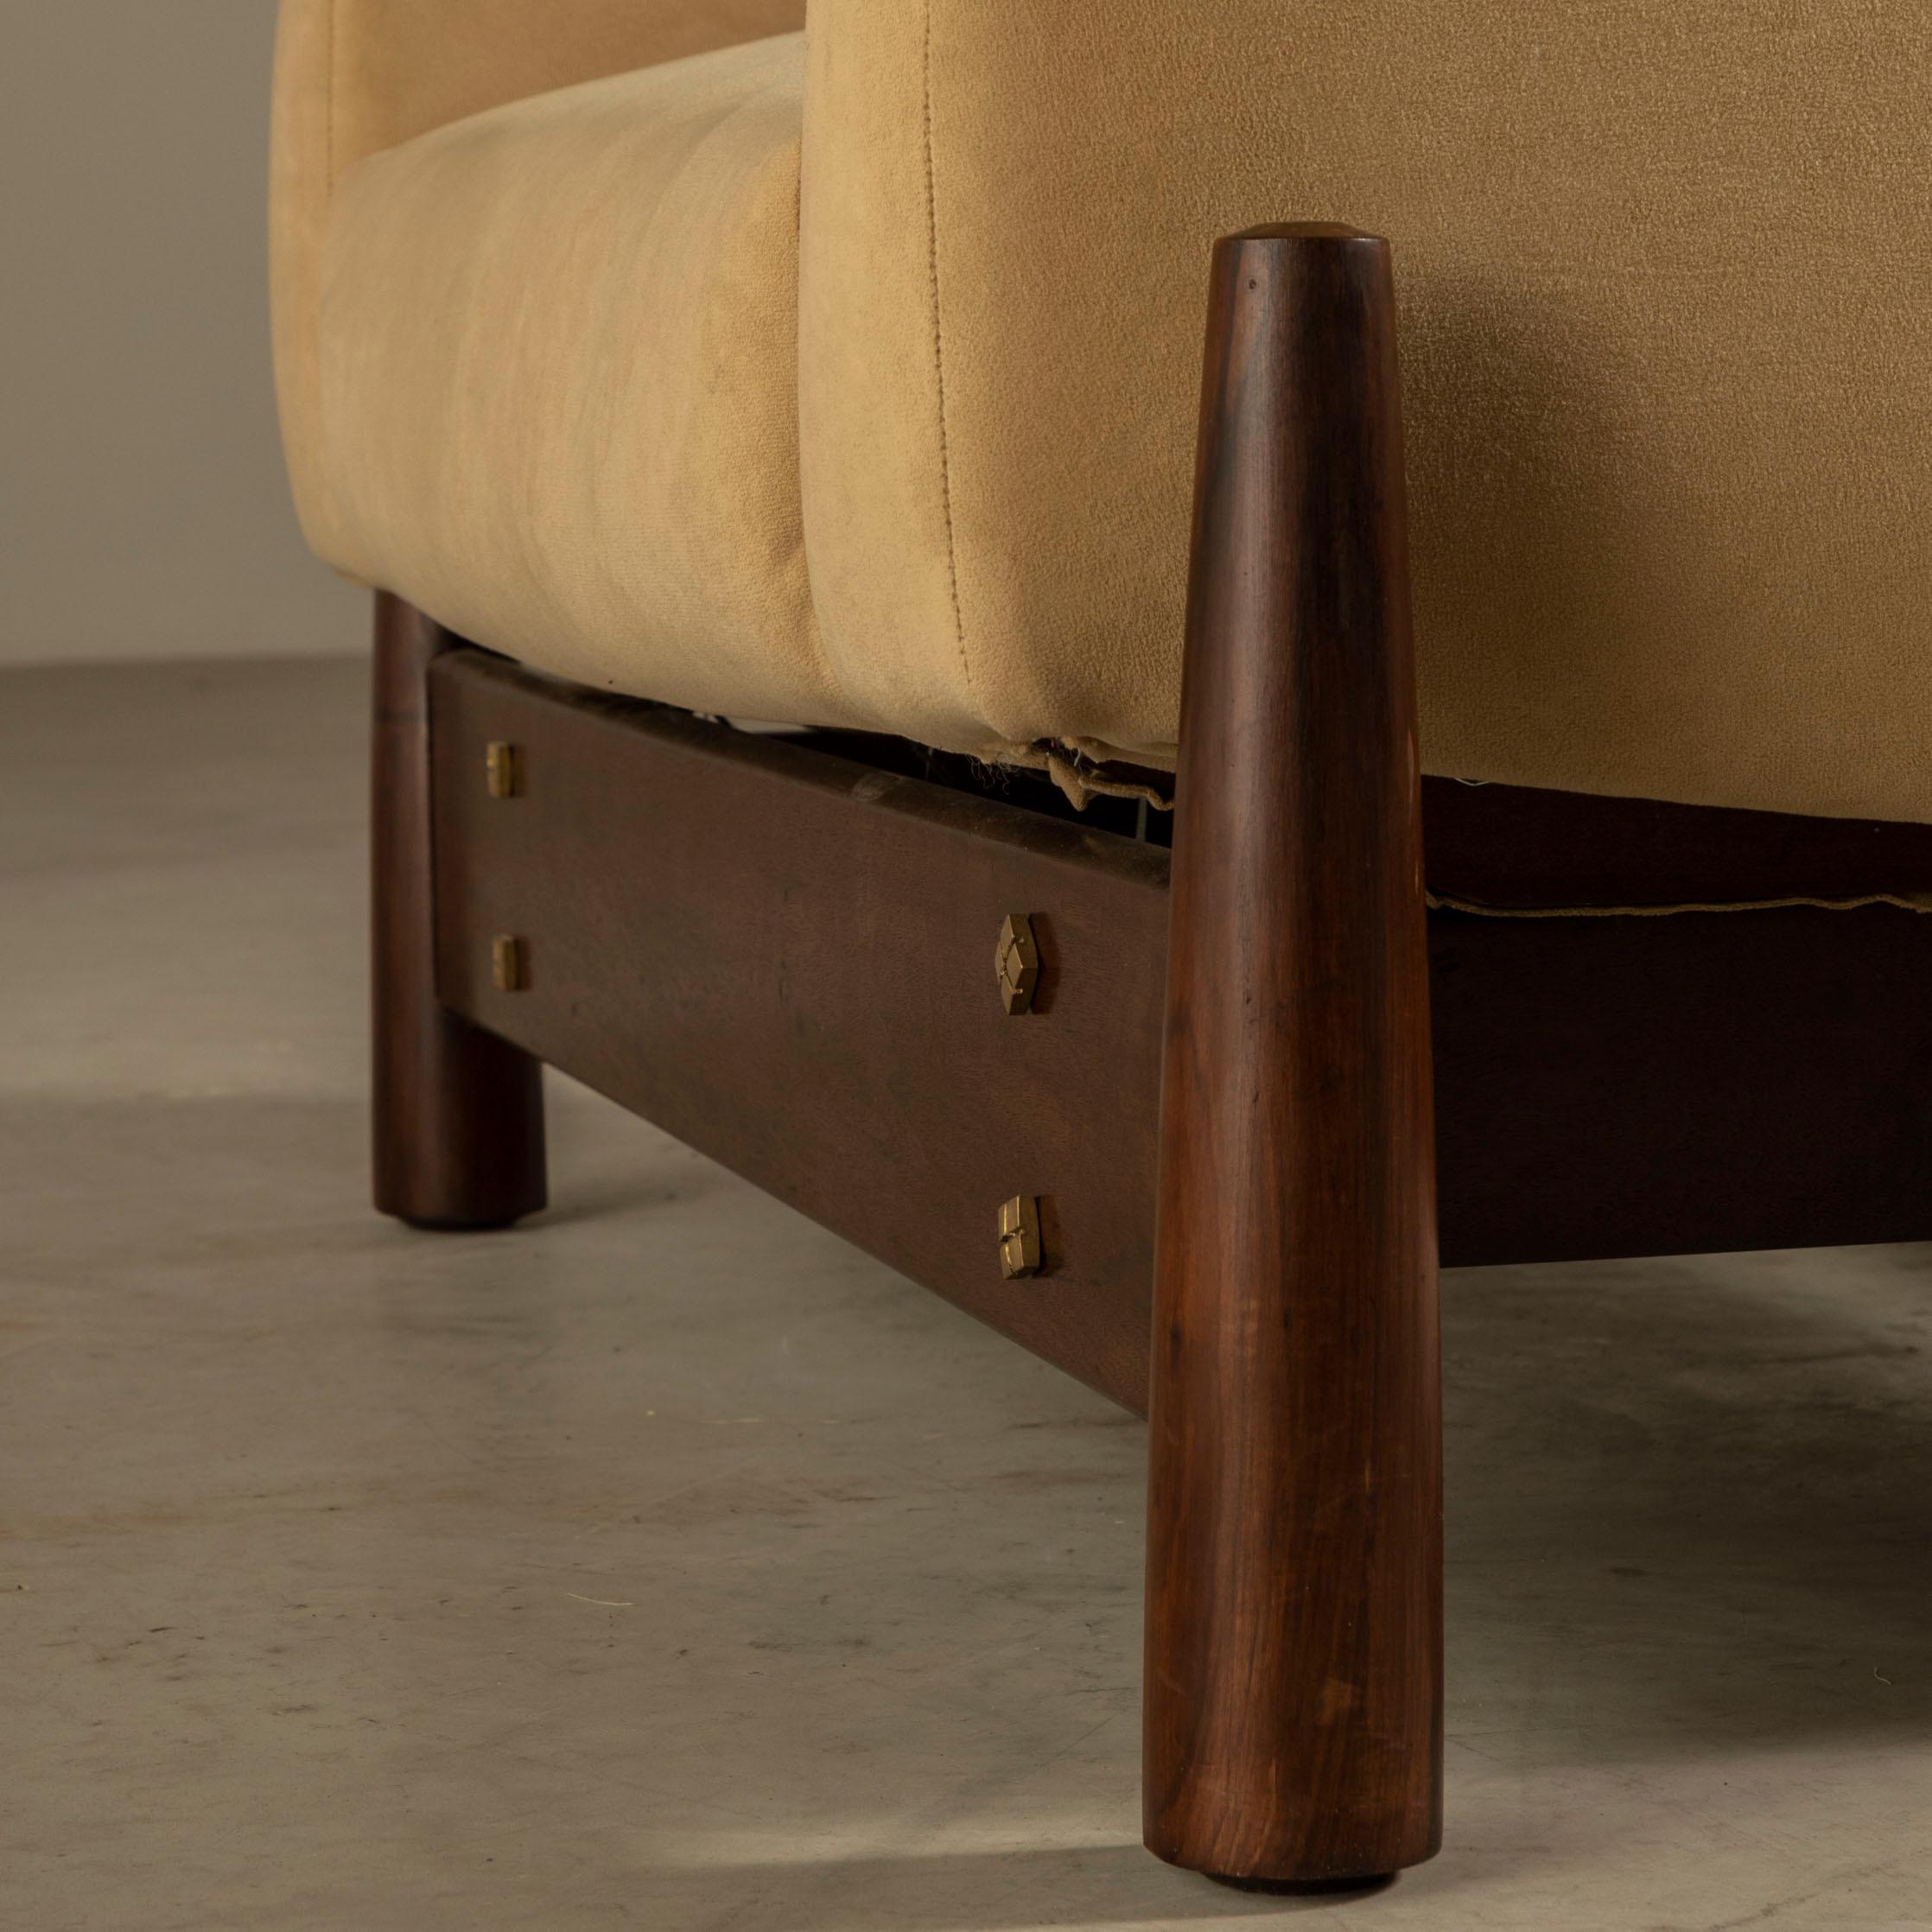 Móveis Cimo Lounge Chair, Brazilian Hardwood, Brazilian Midcentury 2